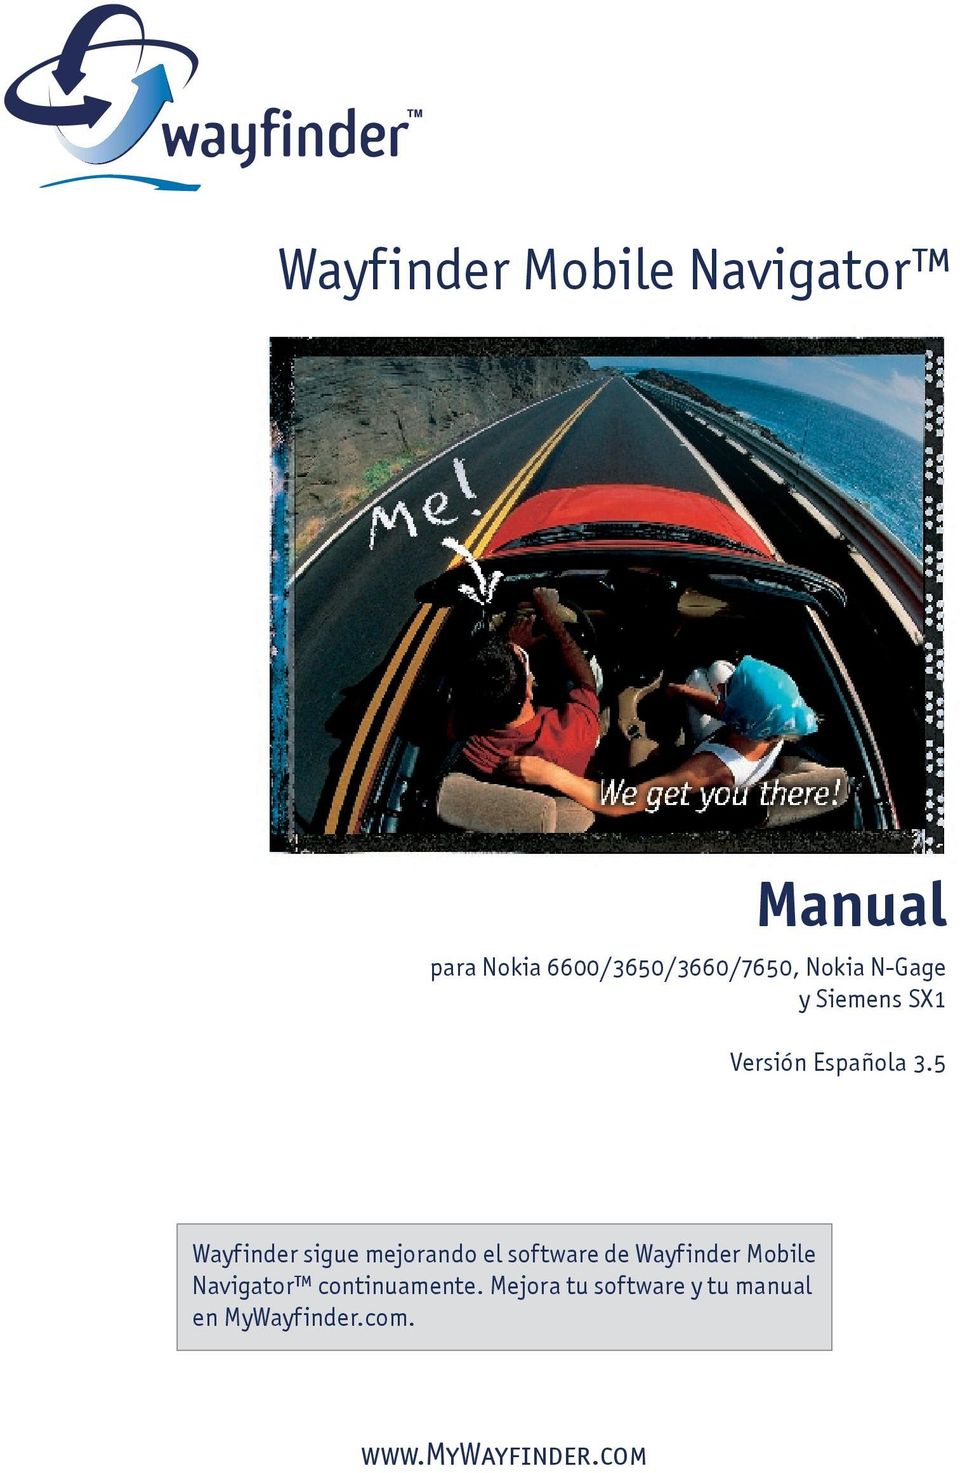 5 Wayfinder sigue mejorando el software de Wayfinder Mobile